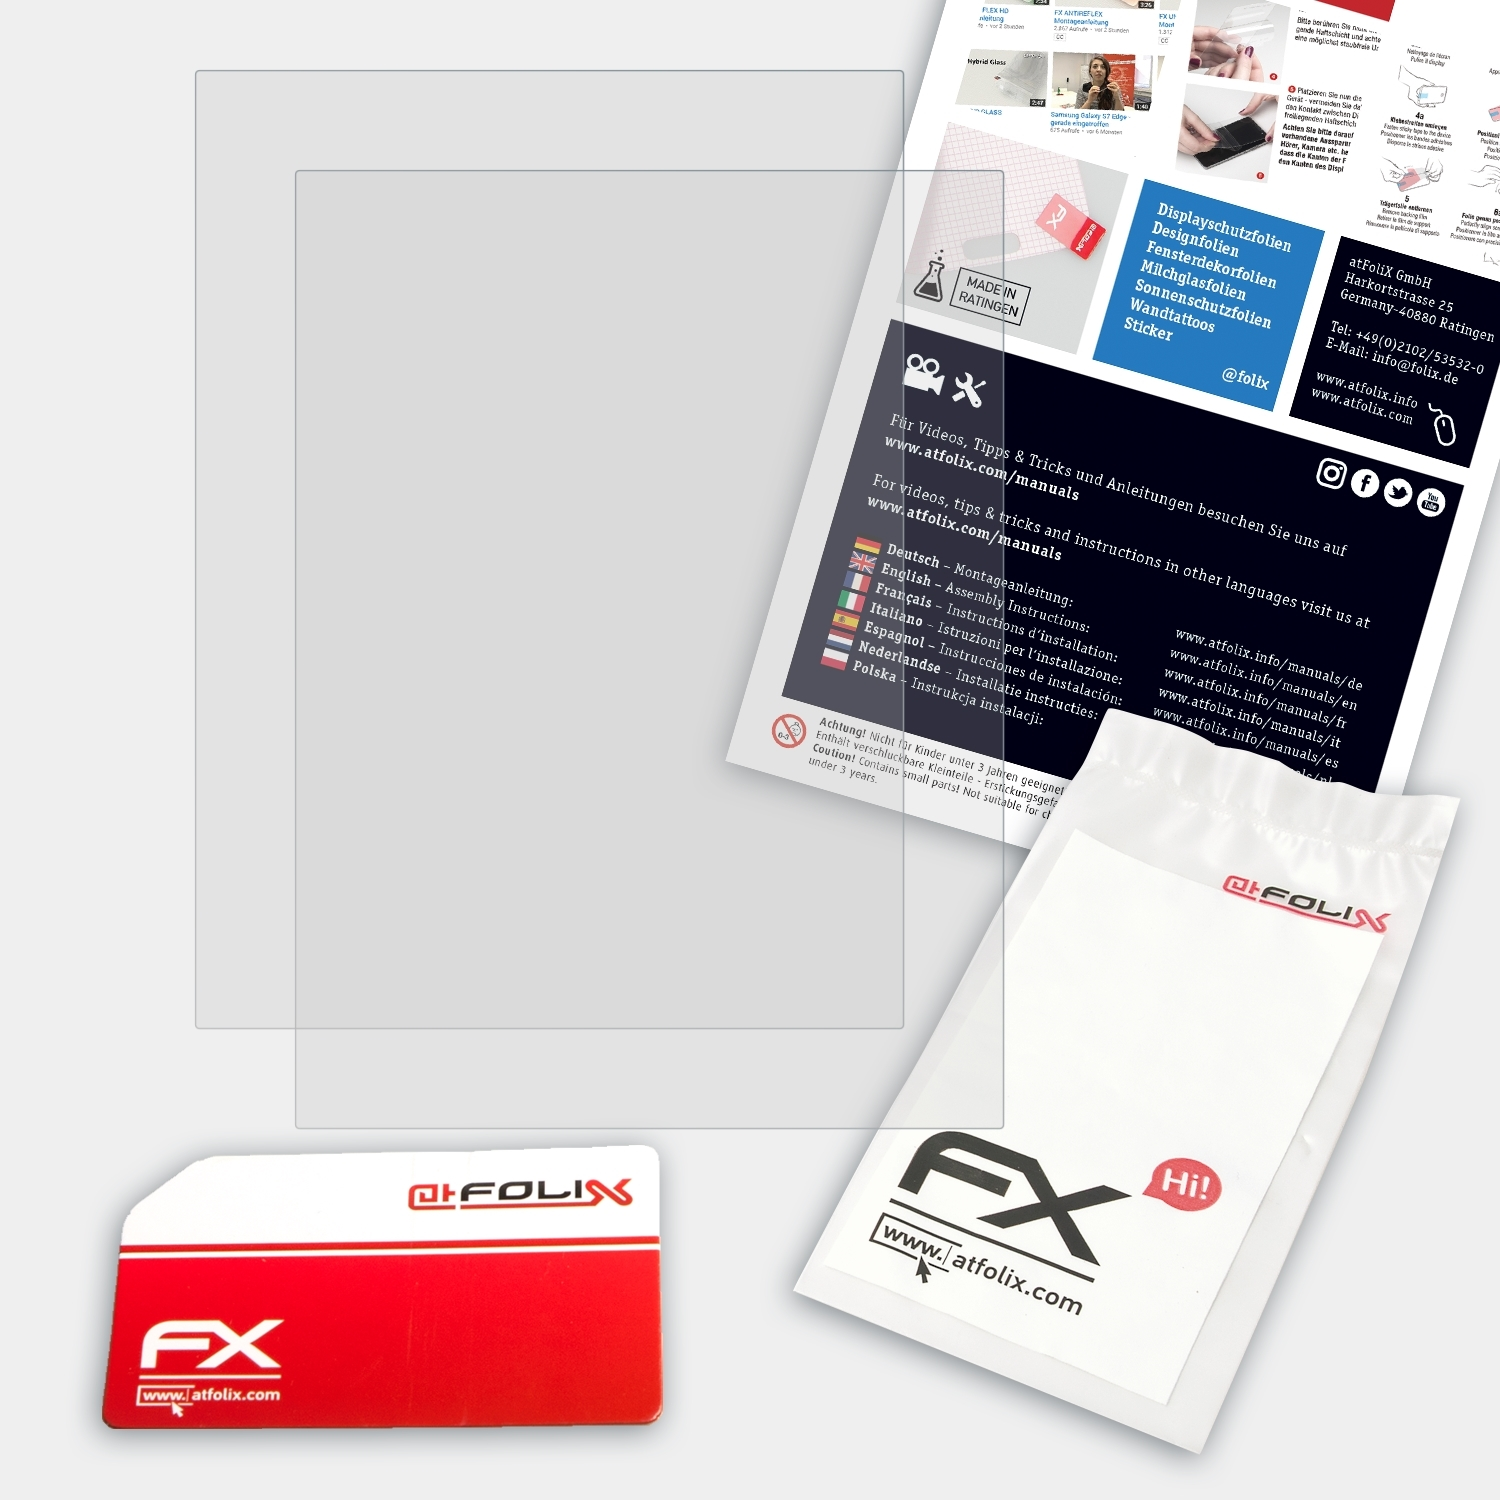 2x 2) FX-Antireflex Edition Kobo Aura Displayschutz(für ATFOLIX